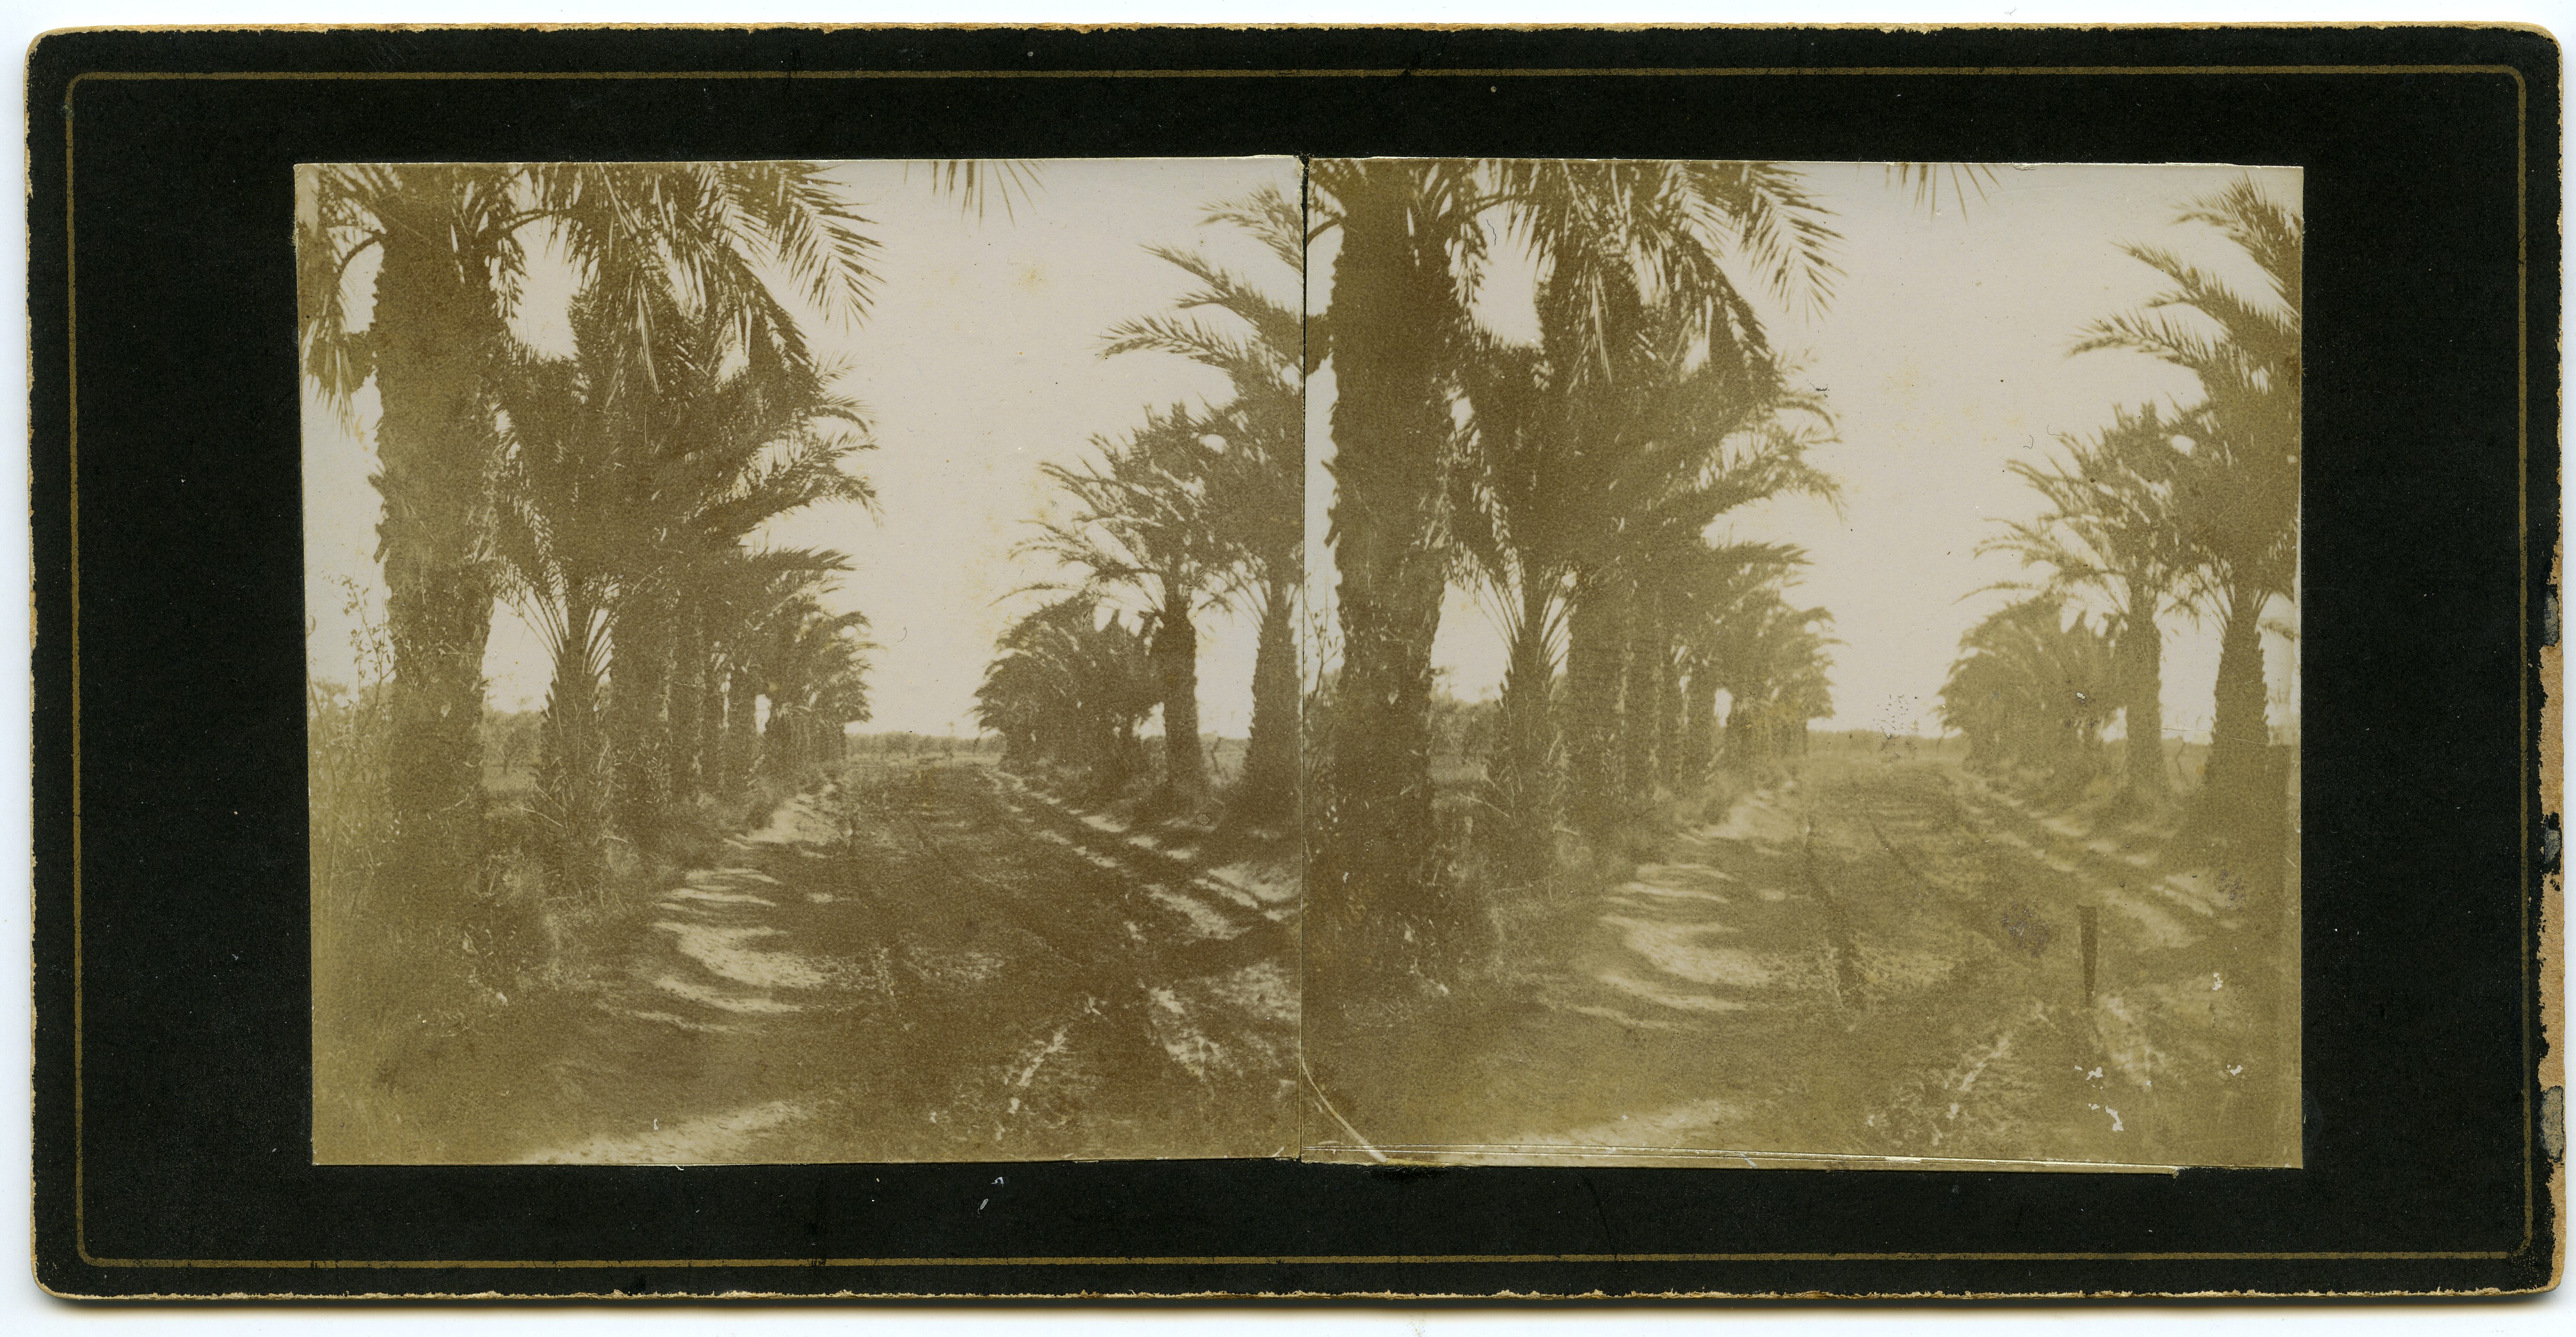 Vista de un camino de tierra flanqueado entre palmeras